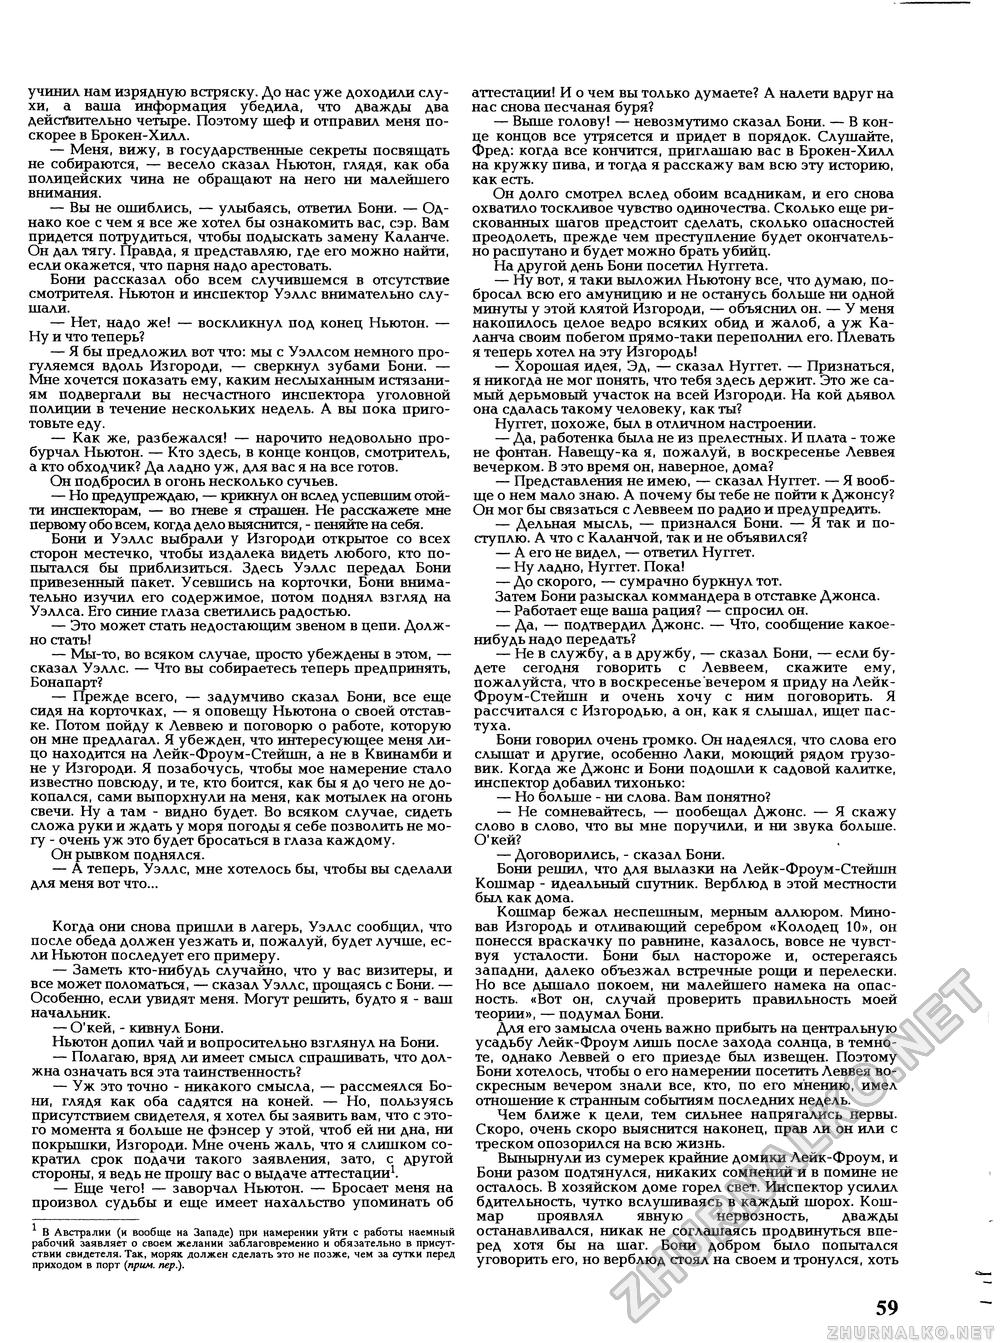 Вокруг света 1994-04, страница 61